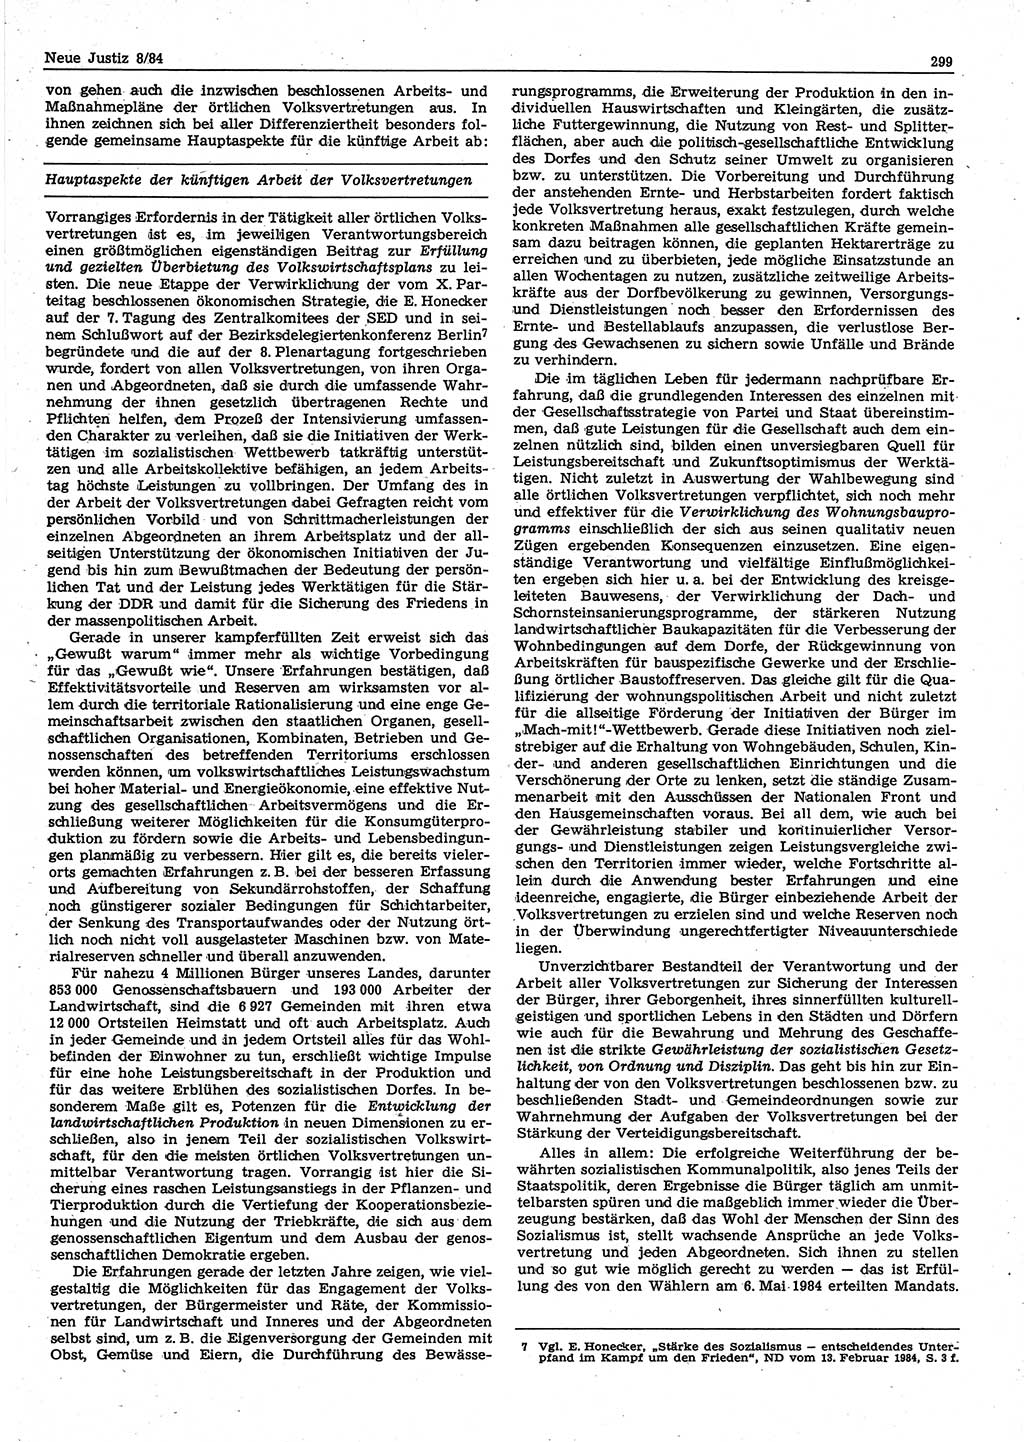 Neue Justiz (NJ), Zeitschrift für sozialistisches Recht und Gesetzlichkeit [Deutsche Demokratische Republik (DDR)], 38. Jahrgang 1984, Seite 299 (NJ DDR 1984, S. 299)